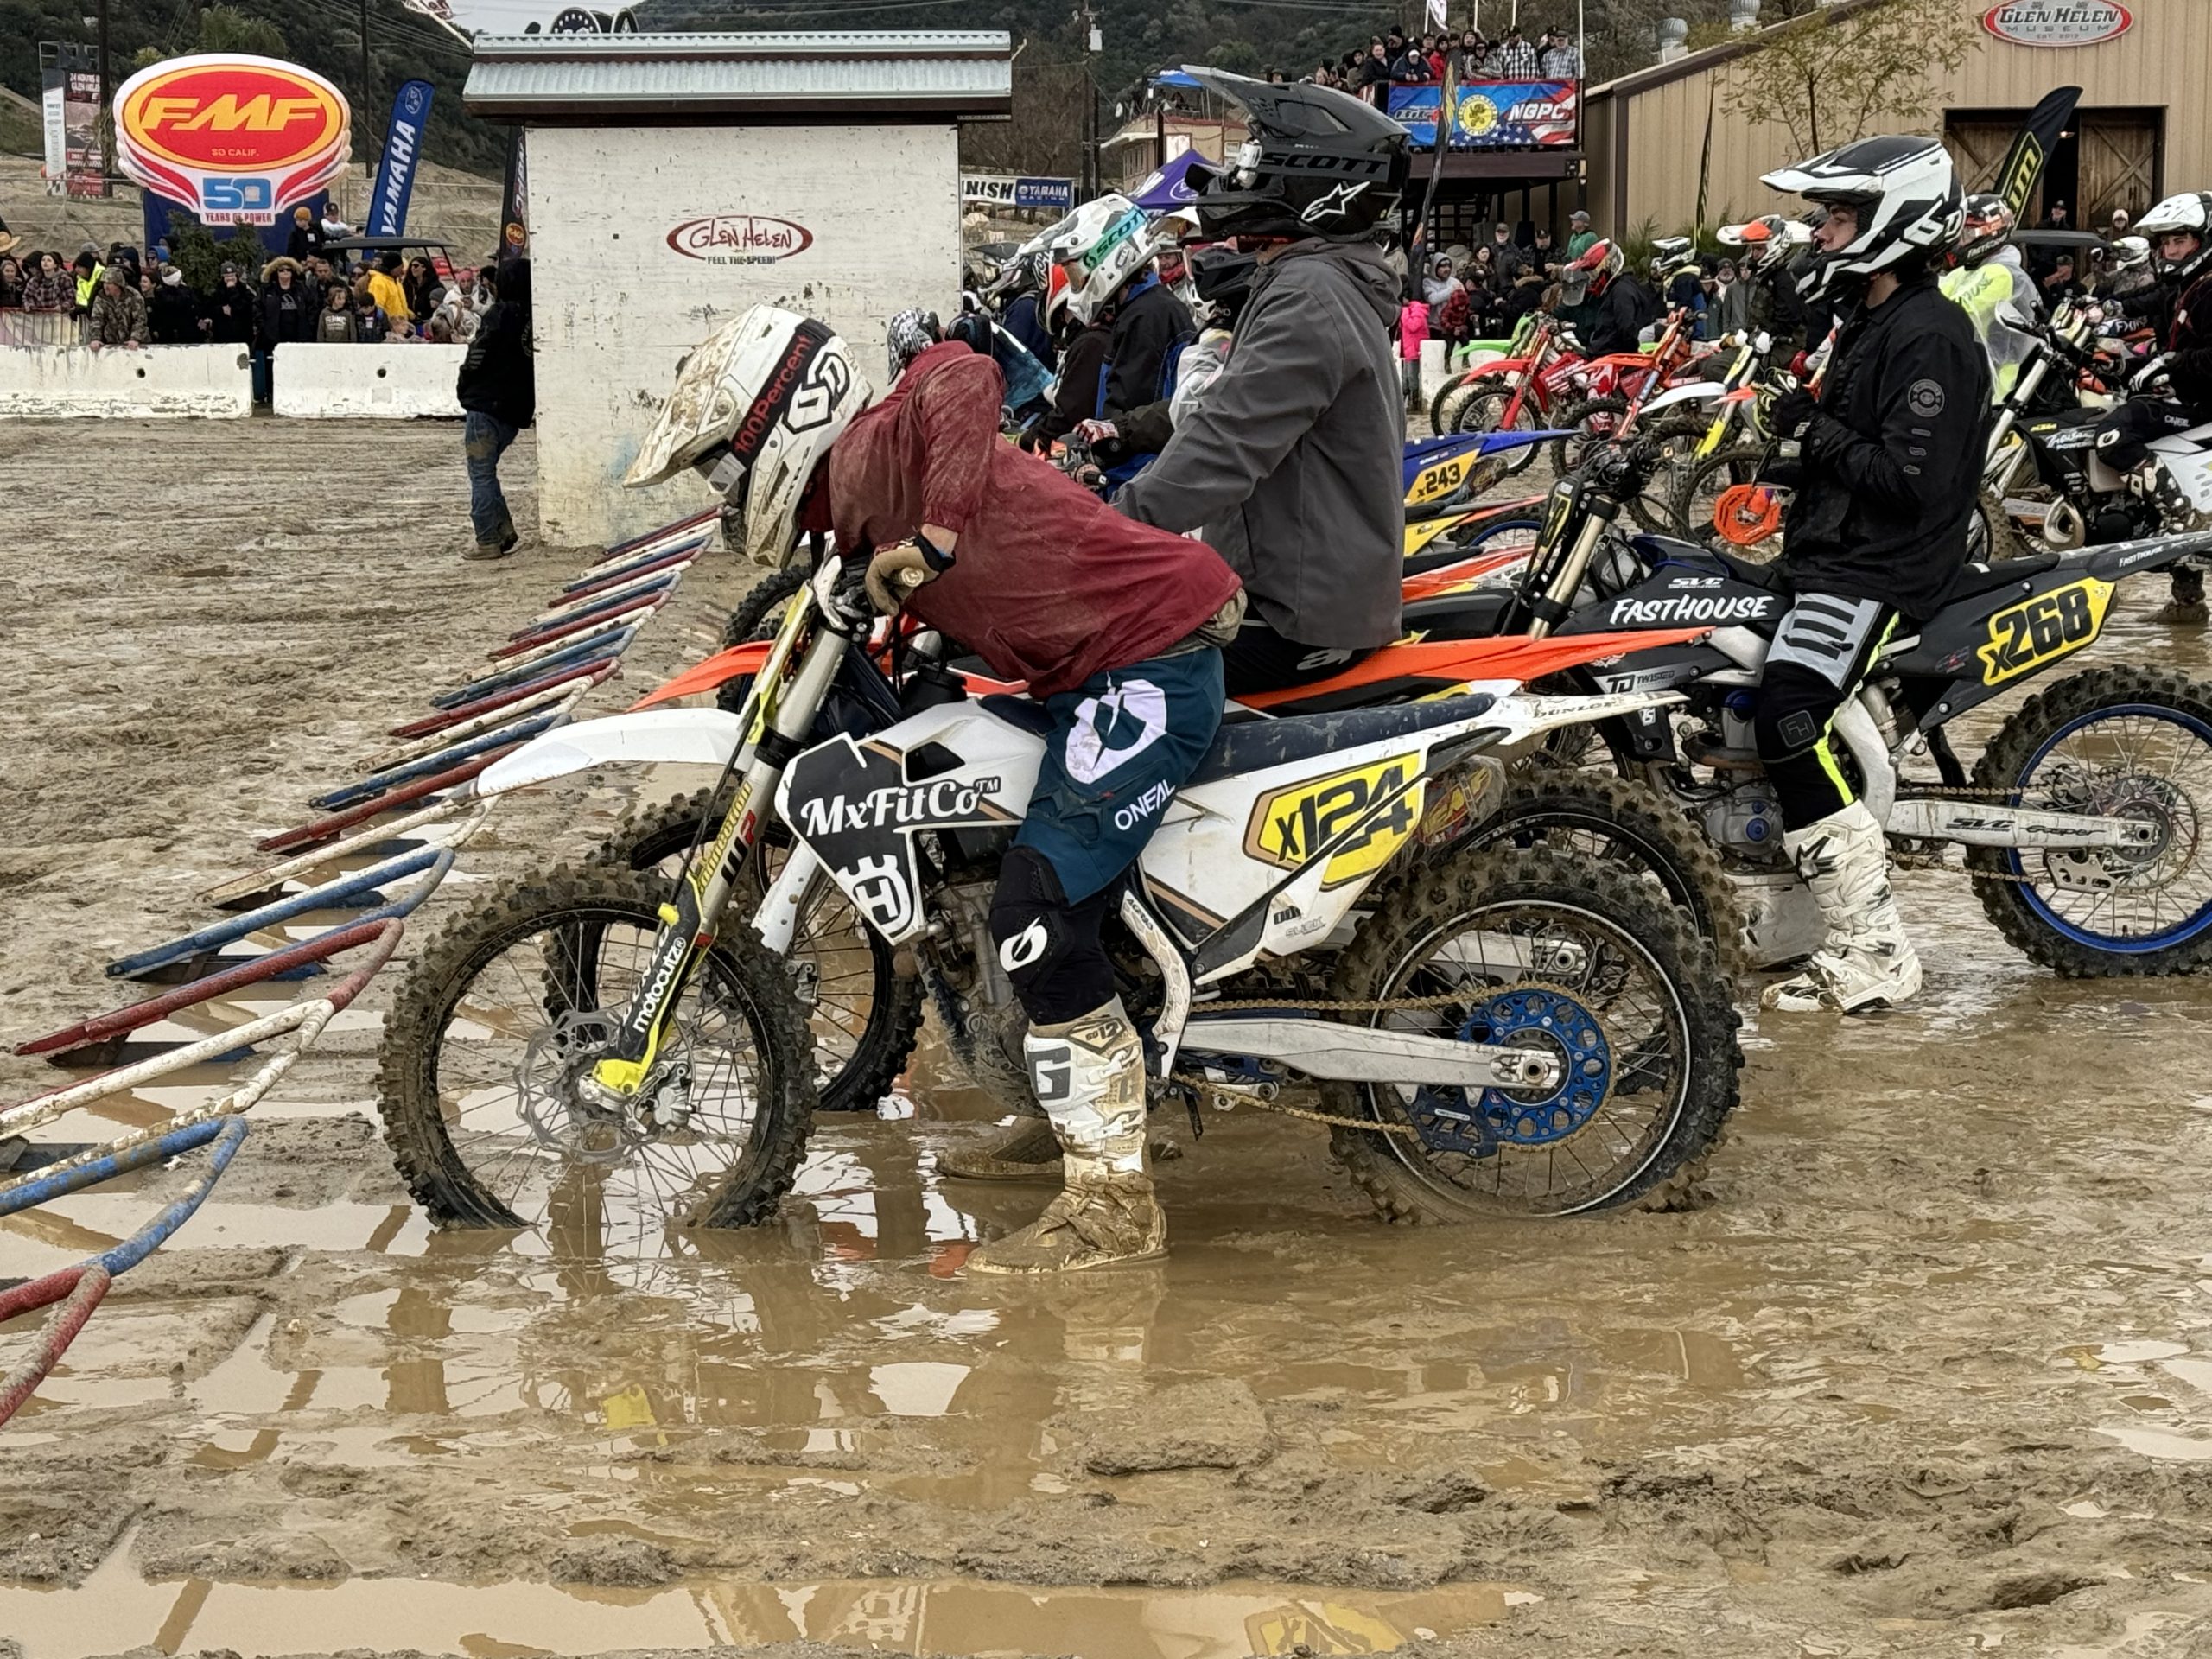 Muddy Dirt Bike race!